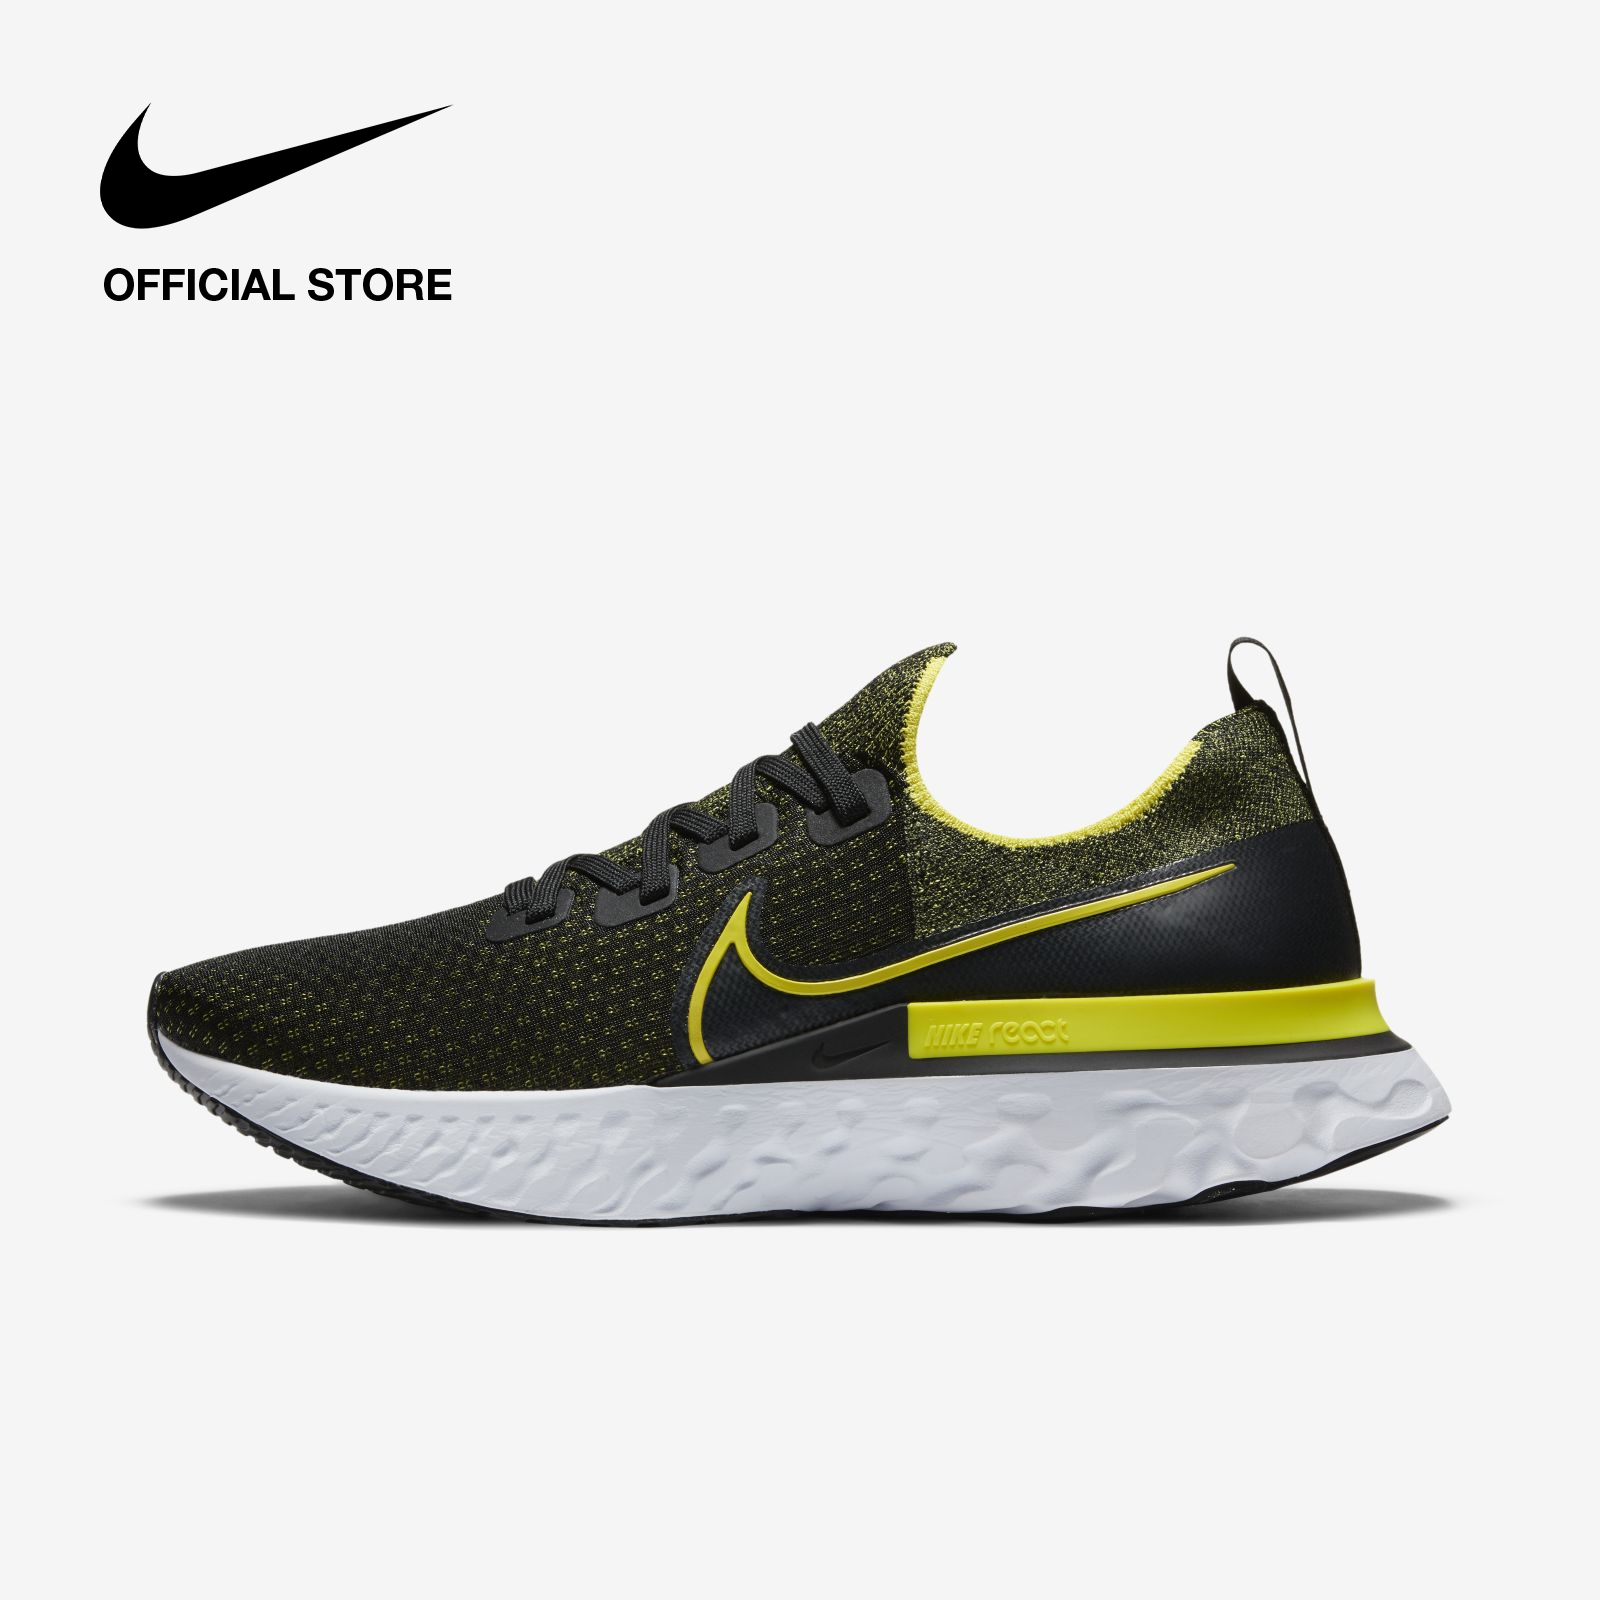 Nike Men's Infinity Run Shoes - Black ไนกี้ รองเท้าวิ่งผู้ชาย อินฟินิตี้ รัน - สีดำ